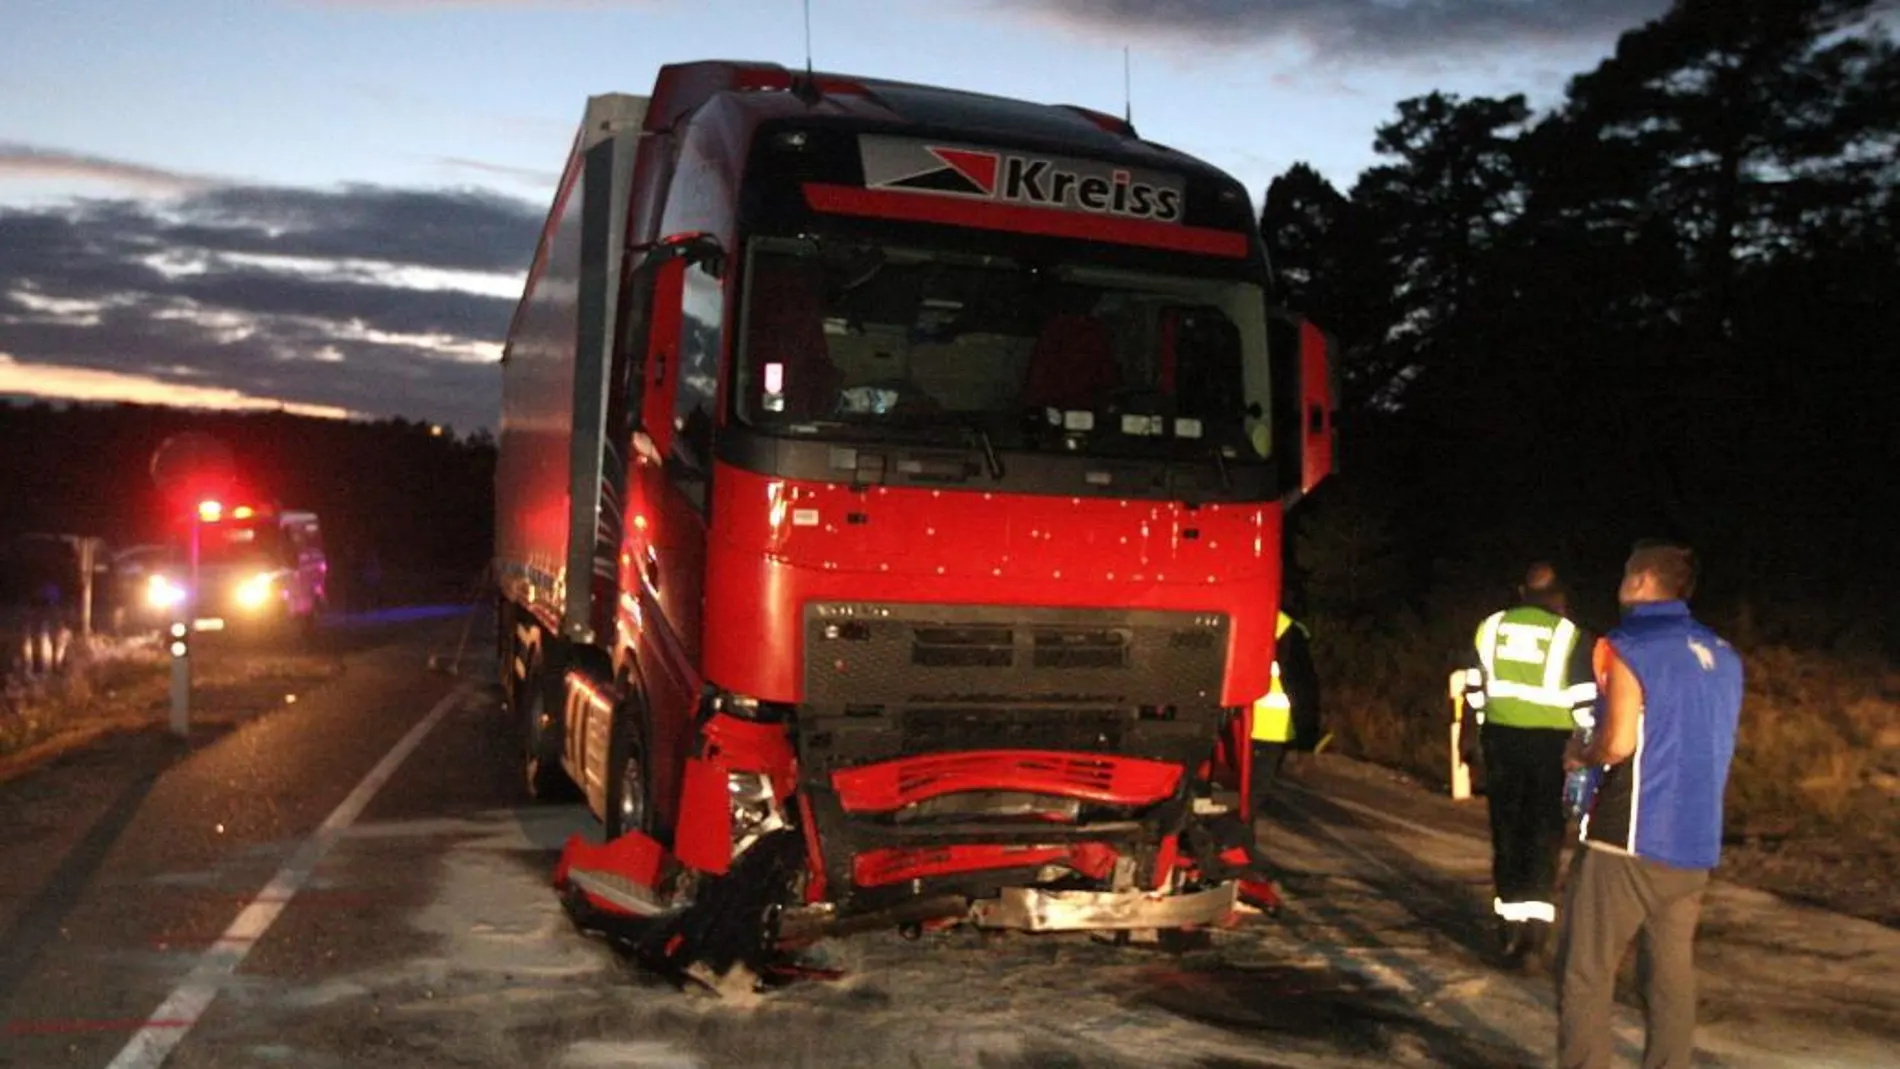 Tres personas fallecieron al colisionar frontalmente un turismo y un camión, en la N-234, en Casarejos